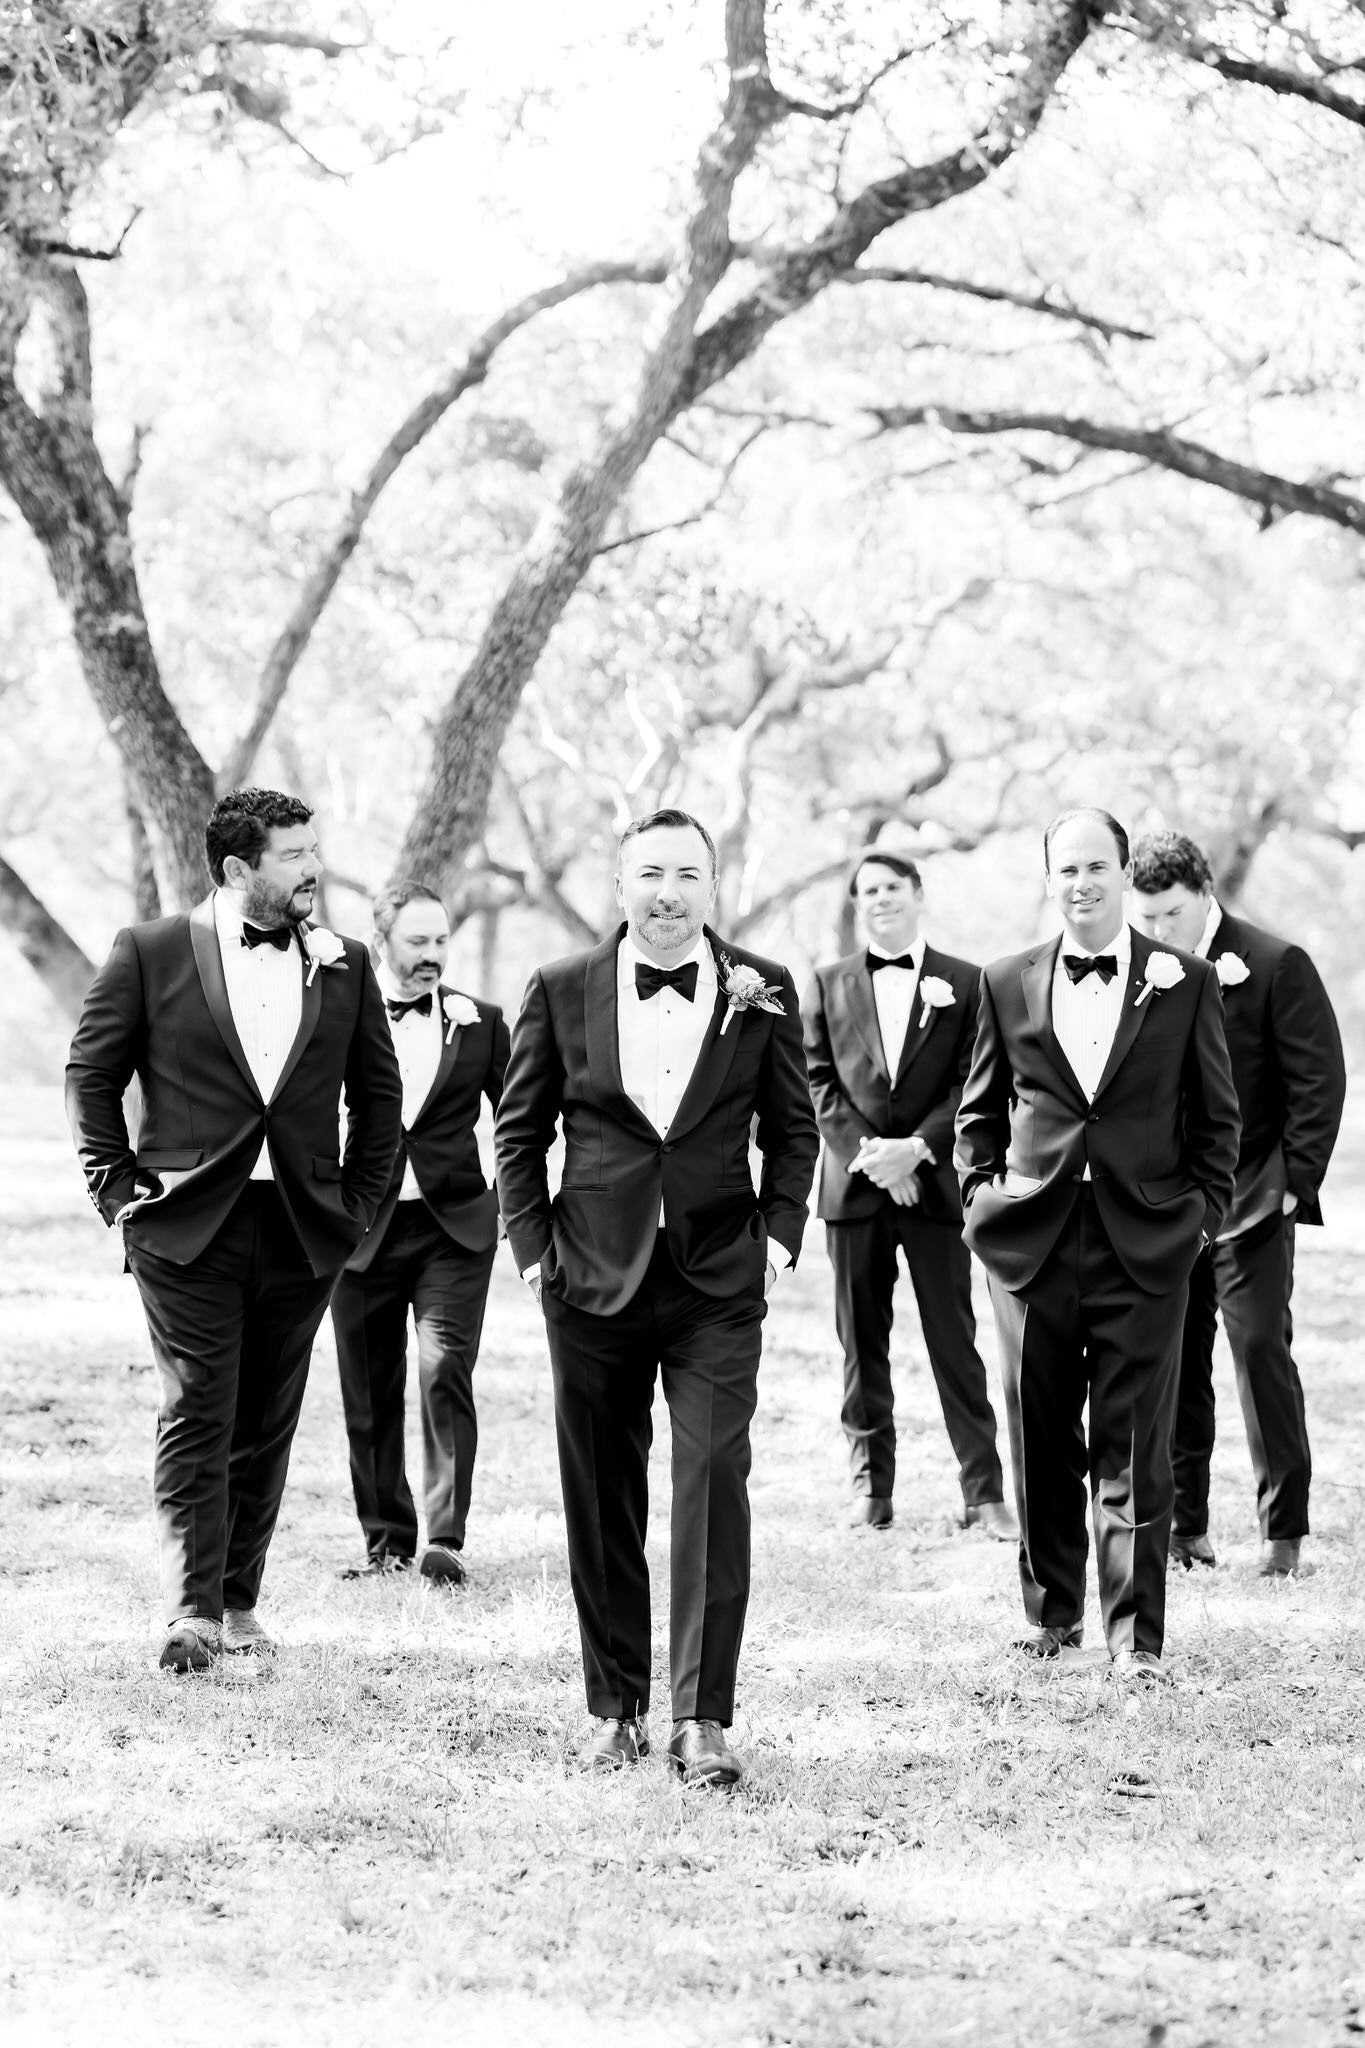 A Black & Mauve Wedding in Beeville, TX by Dawn Elizabeth Studios, San Antonio Wedding Photographer